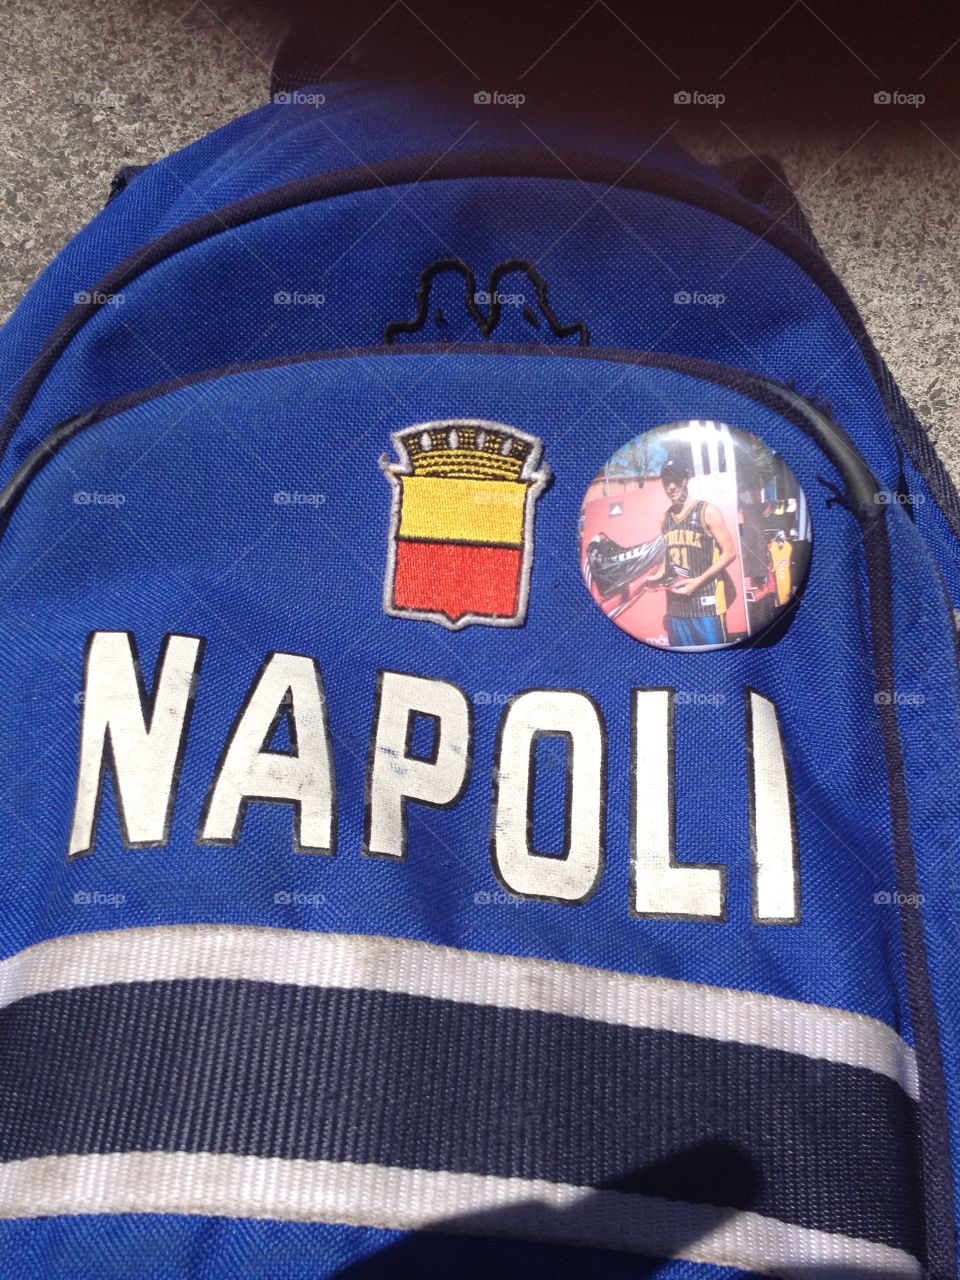 napoli bag. City of naples bag